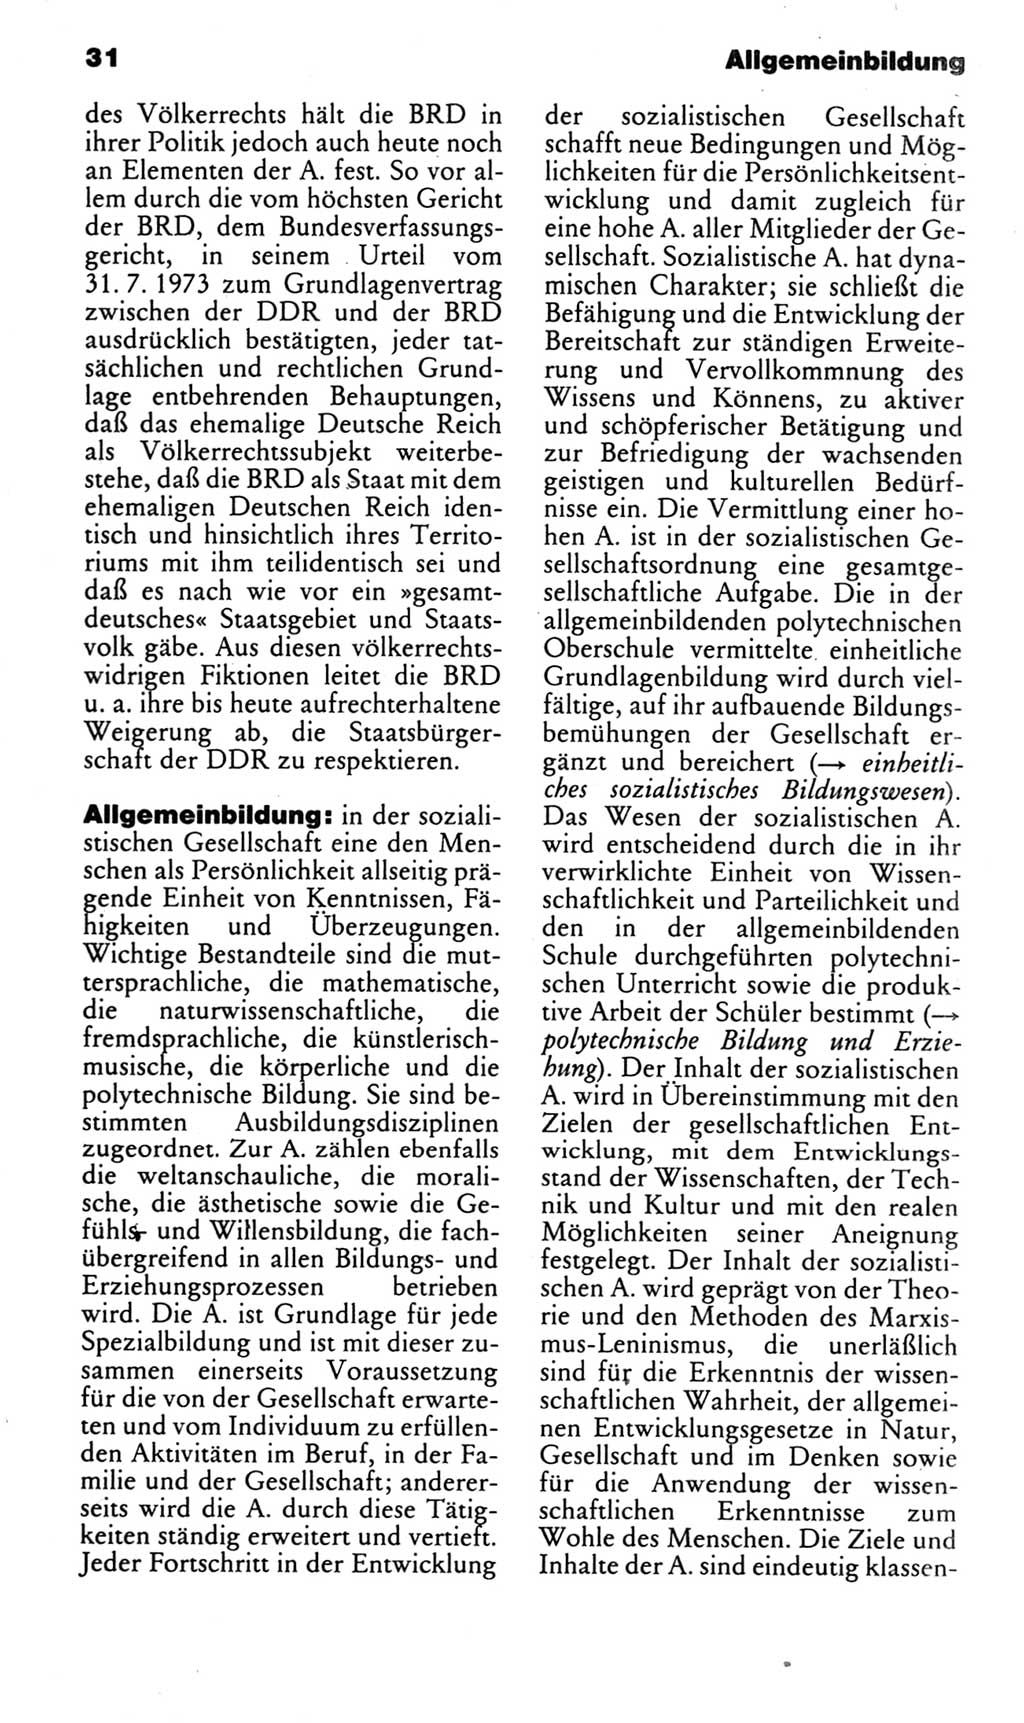 Kleines politisches Wörterbuch [Deutsche Demokratische Republik (DDR)] 1983, Seite 31 (Kl. pol. Wb. DDR 1983, S. 31)